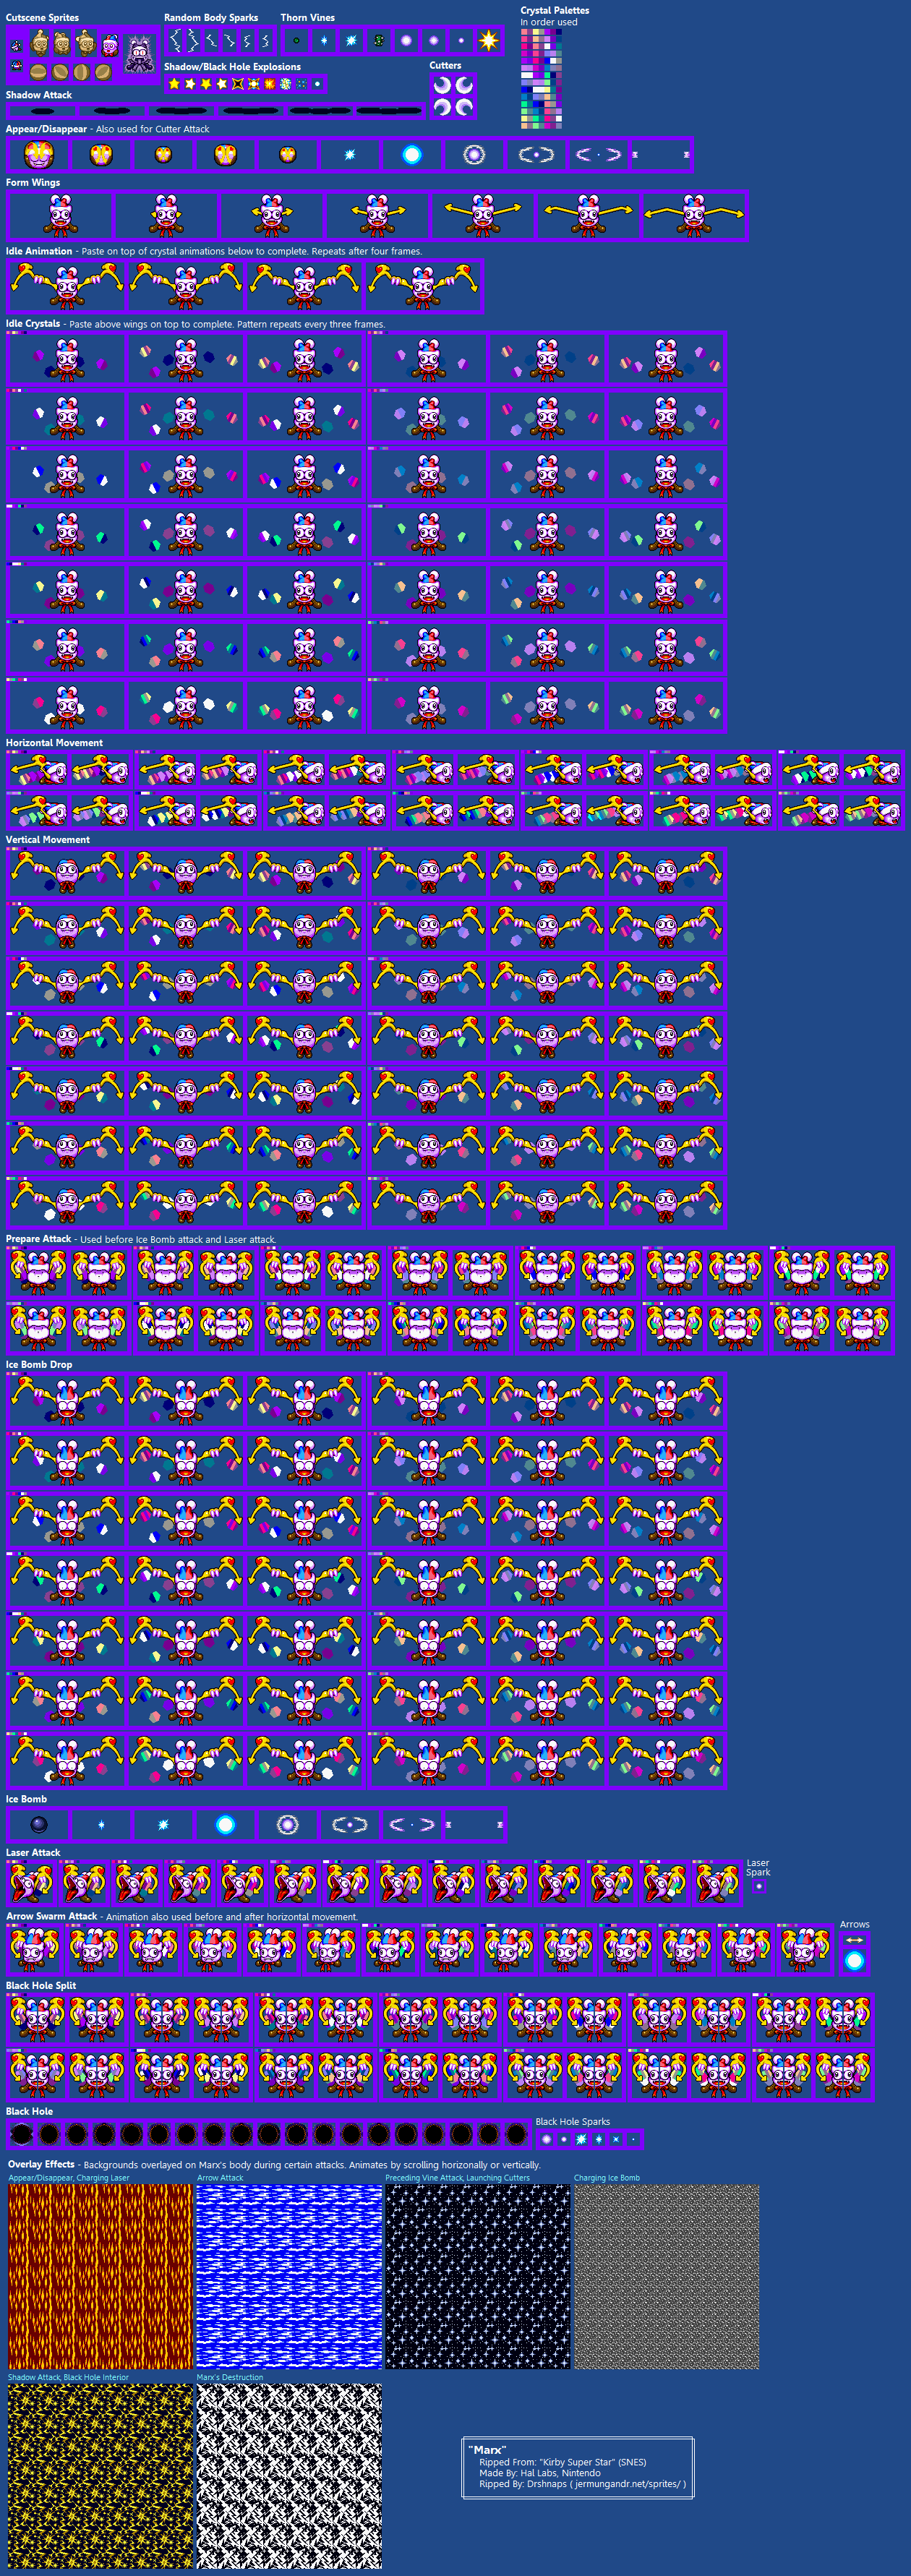 The Spriters Resource - Full Sheet View - Kirby Super Star / Kirby's Fun Pak - Marx1260 x 3563